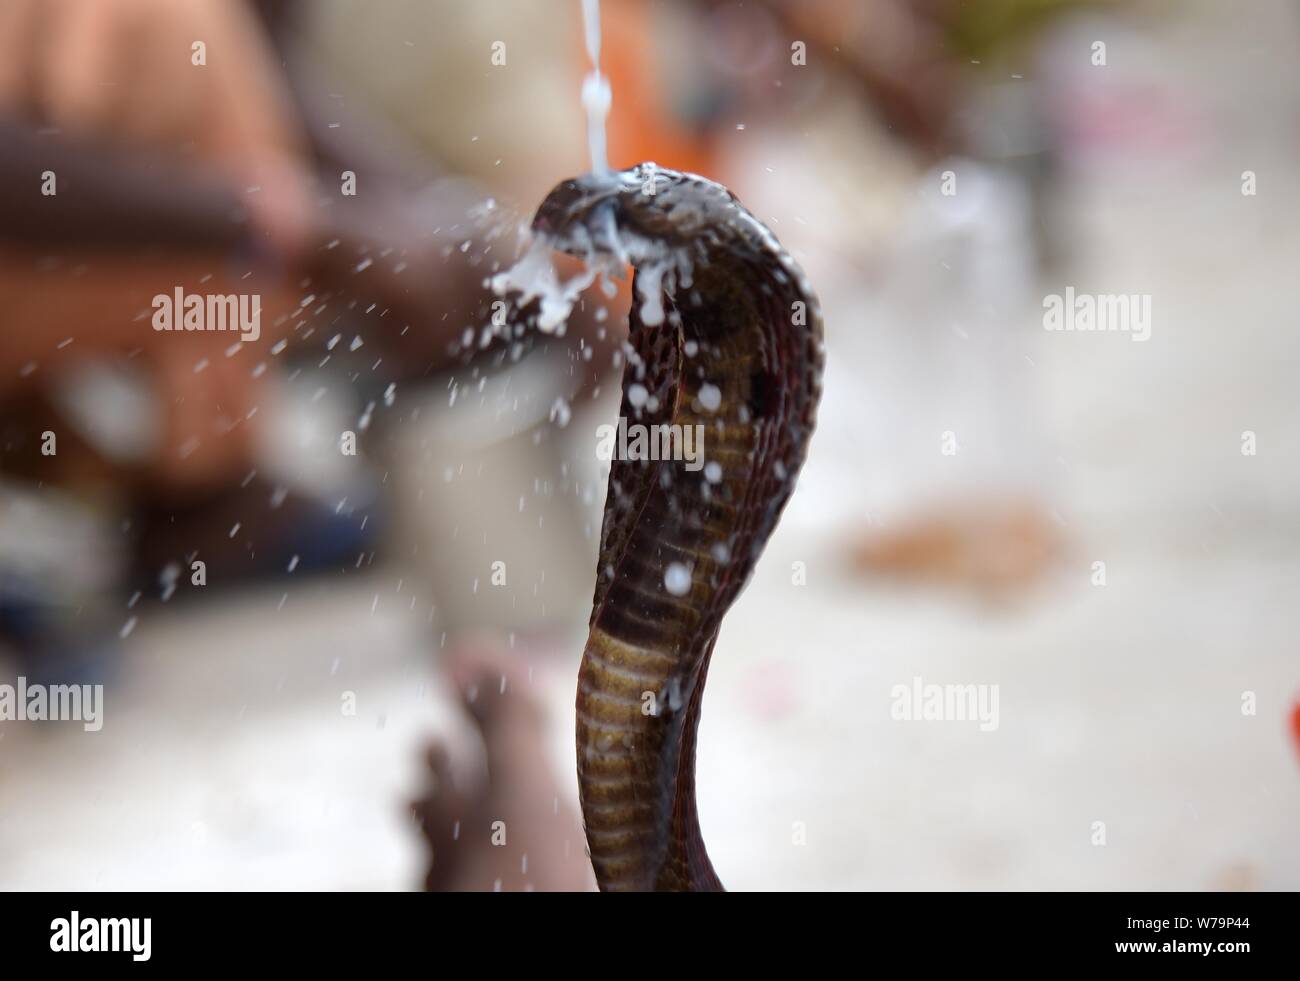 August 5, 2019: Hindu devotee bieten Jalabhishek zu einem Cobra snake anlässlich des Nagpanchami Festival während Shravan Monat in Prayagraj (Singapore) am 05. August 2019. Credit: Prabhat Kumar Verma/ZUMA Draht/Alamy leben Nachrichten Stockfoto